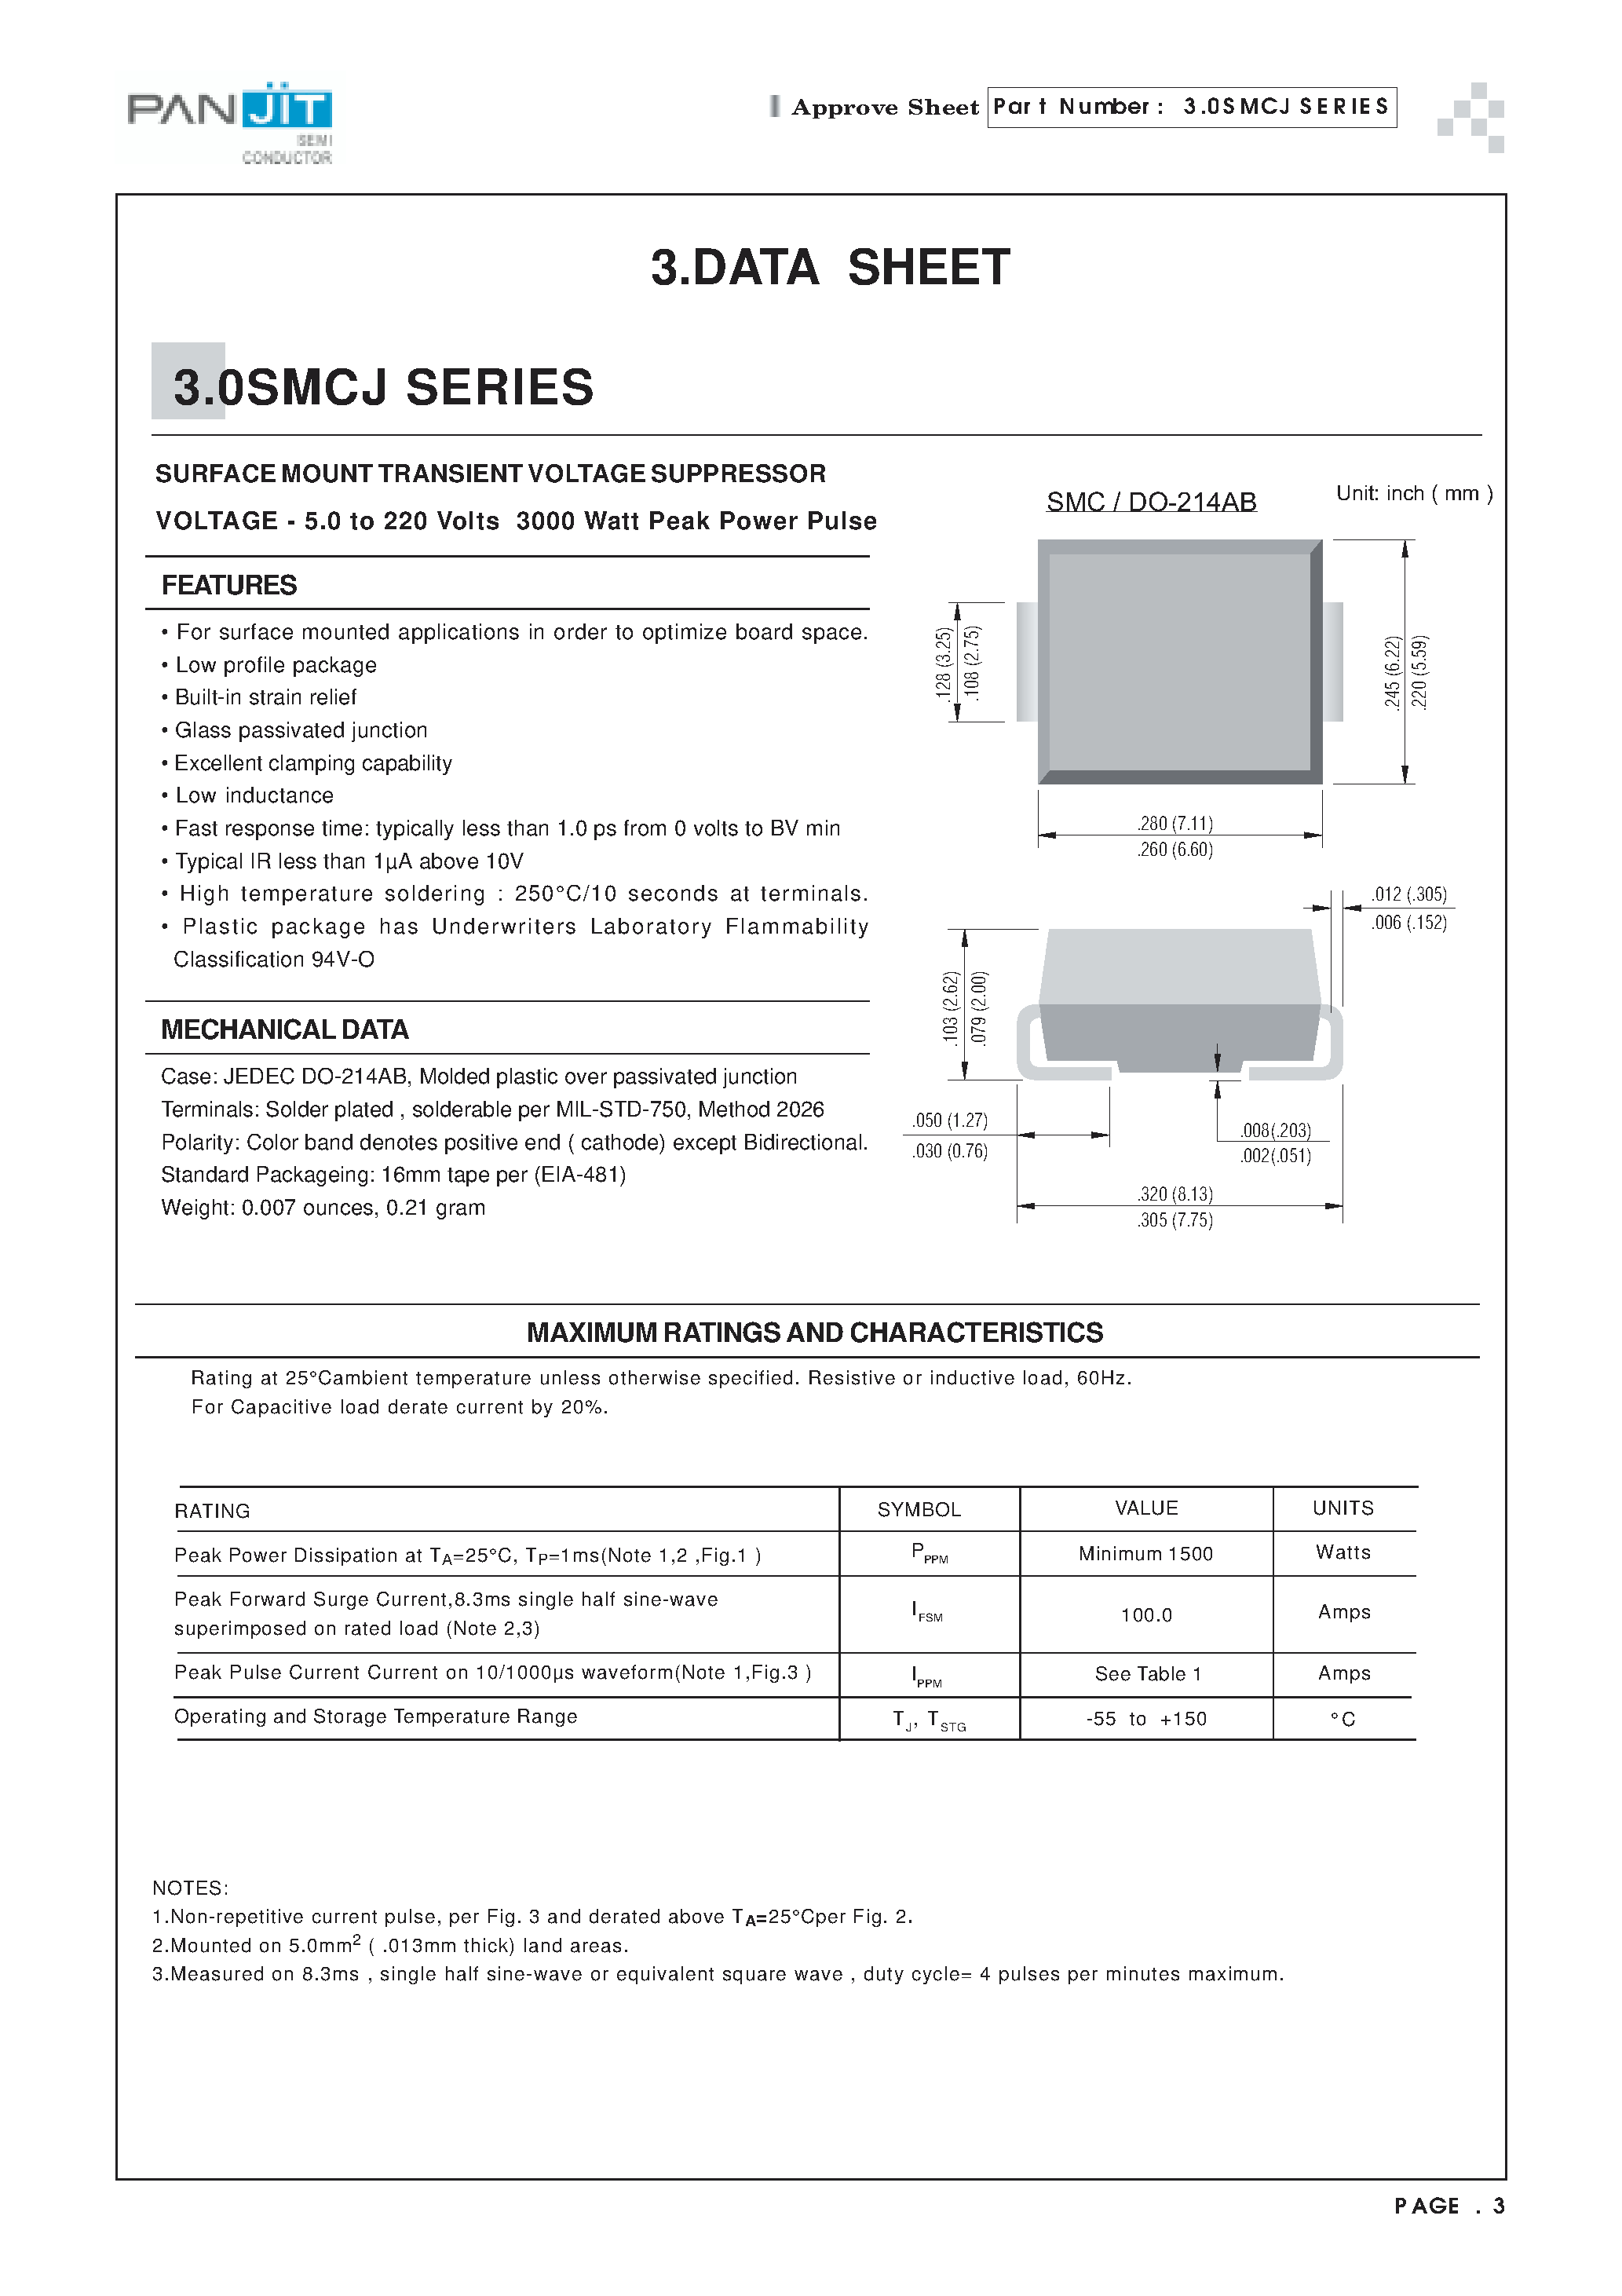 Datasheet 3.0SMCJ8.5 - SURFACE MOUNT TRANSIENT VOLTAGE SUPPRESSOR(VOLTAGE - 5.0 to 220 Volts 3000 Watt Peak Power Pulse) page 1